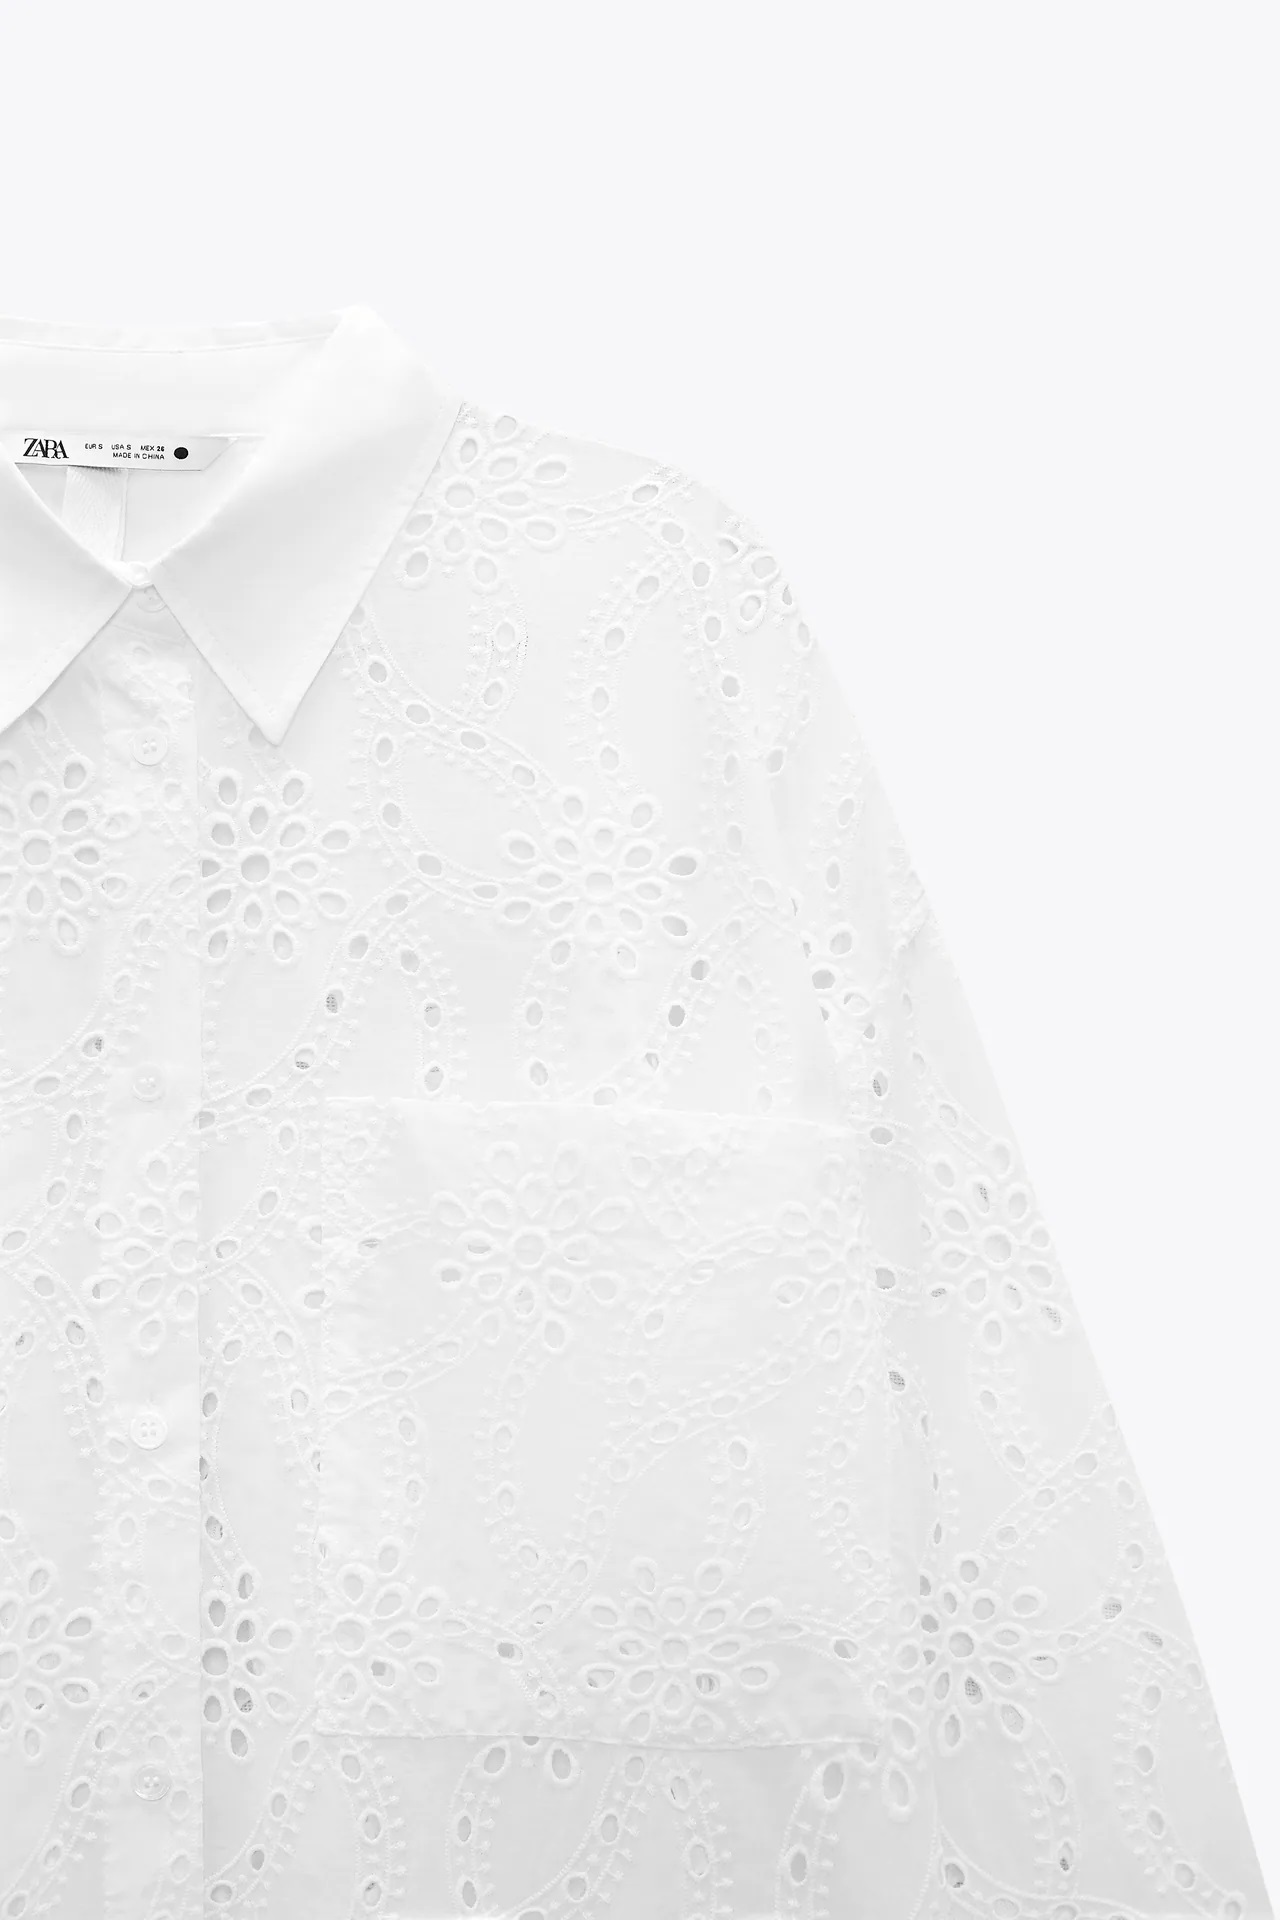 De Valentino a Zara, así es el clon de Inditex de una camisa de más de 2.000 euros